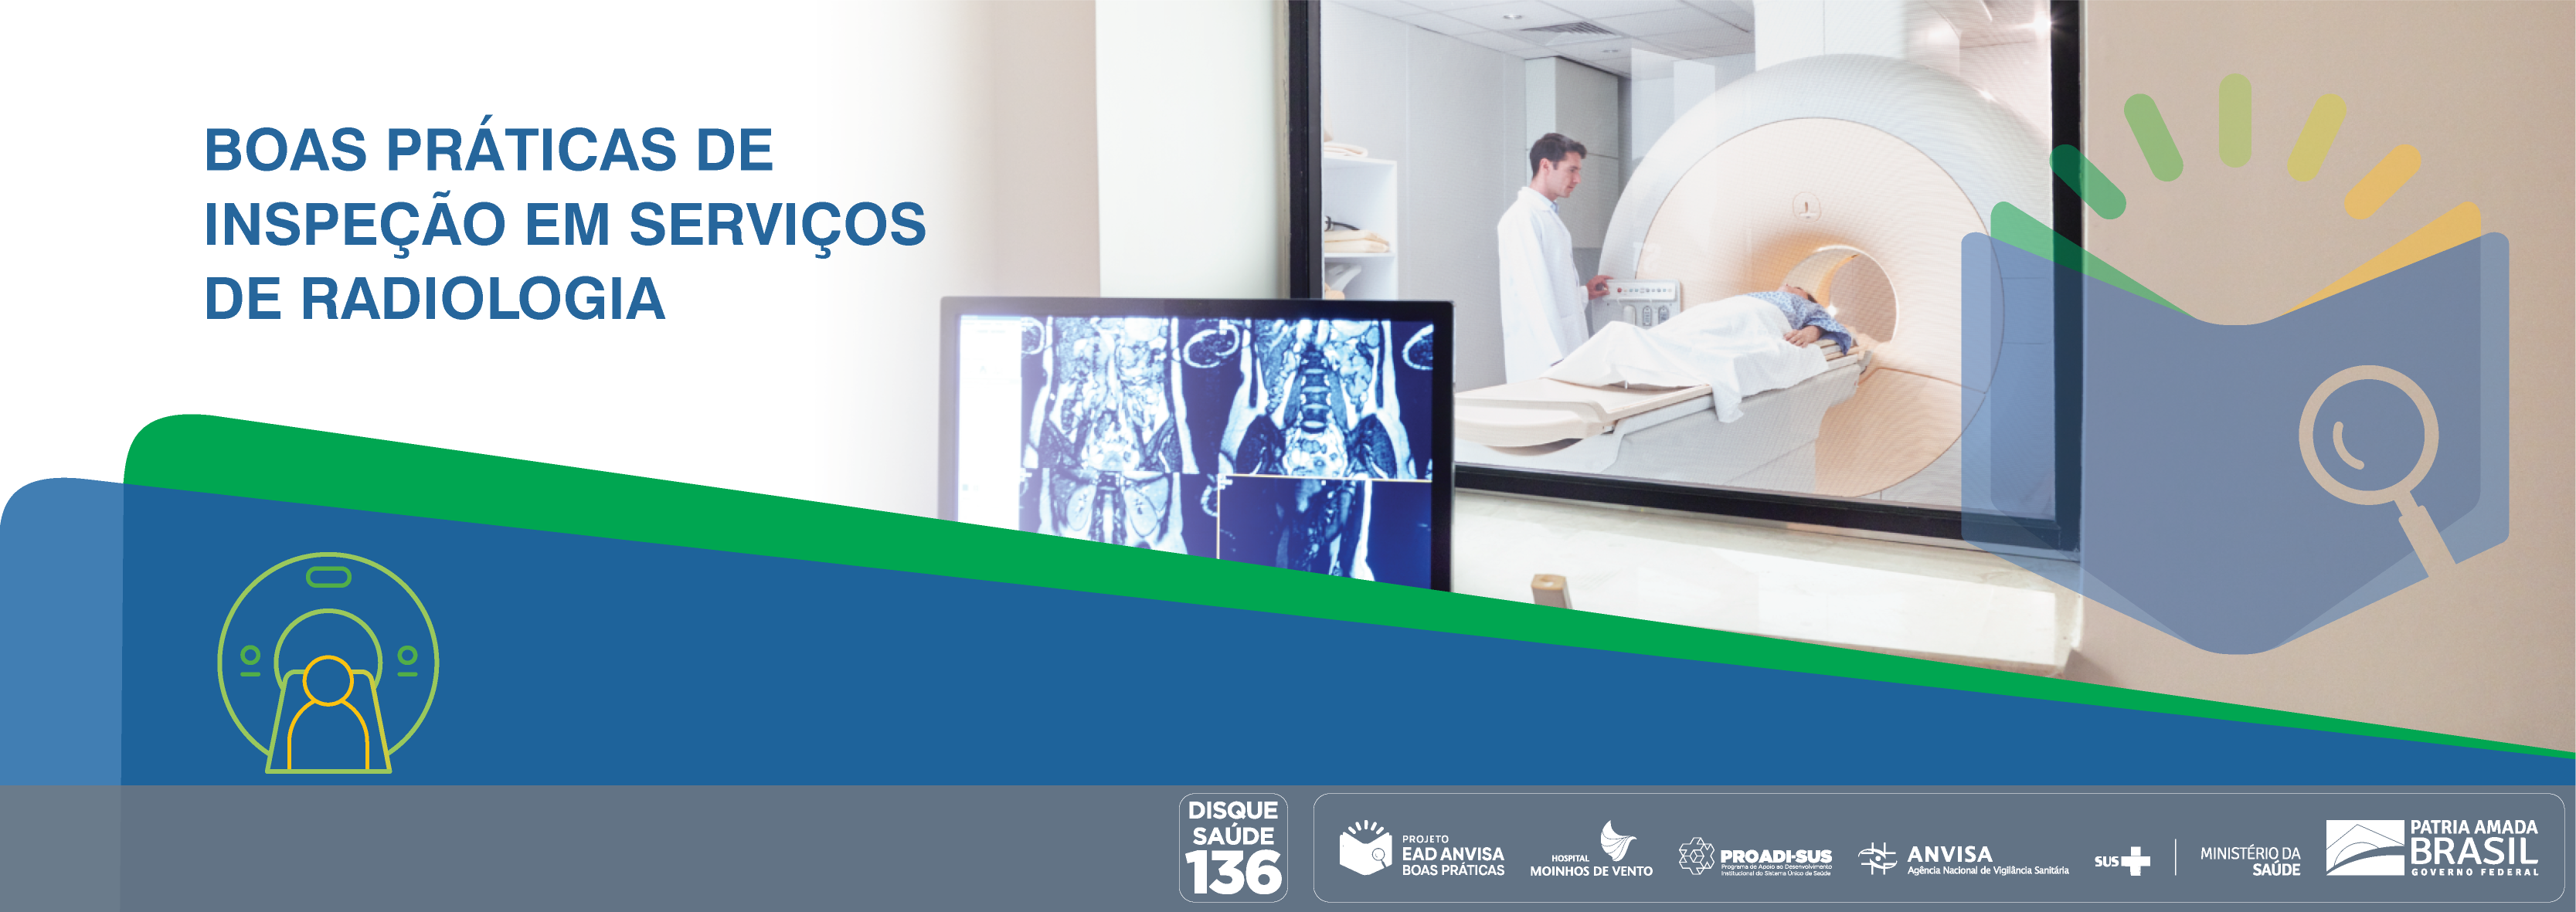 Boas Práticas de Inspeção em Serviços de Radiologia ANVISA_2021_BPISR